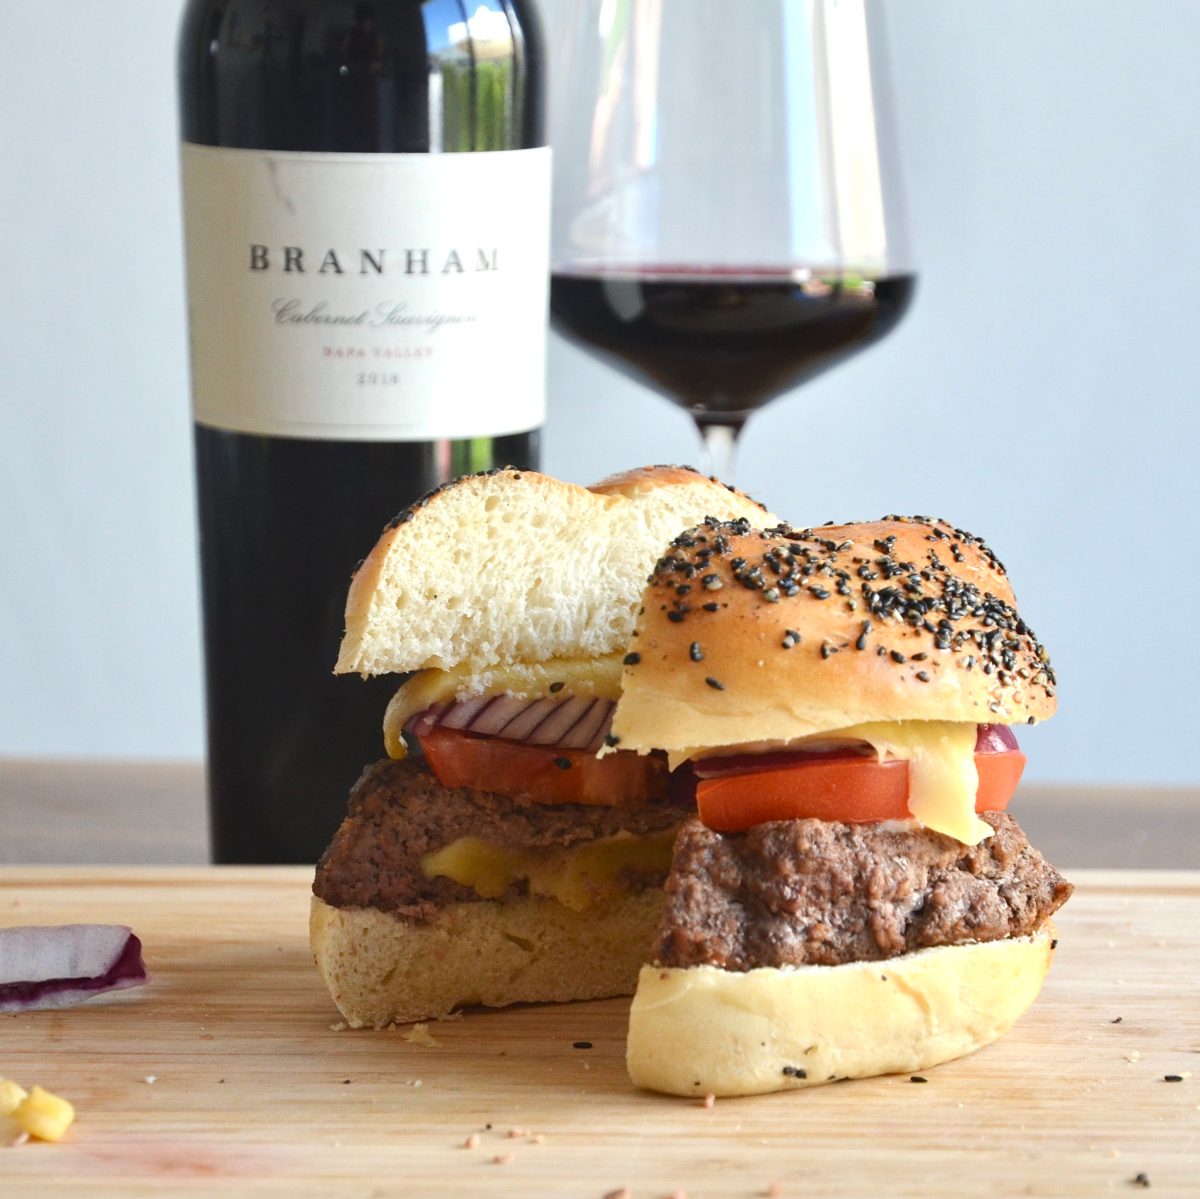 burger and wine pairing